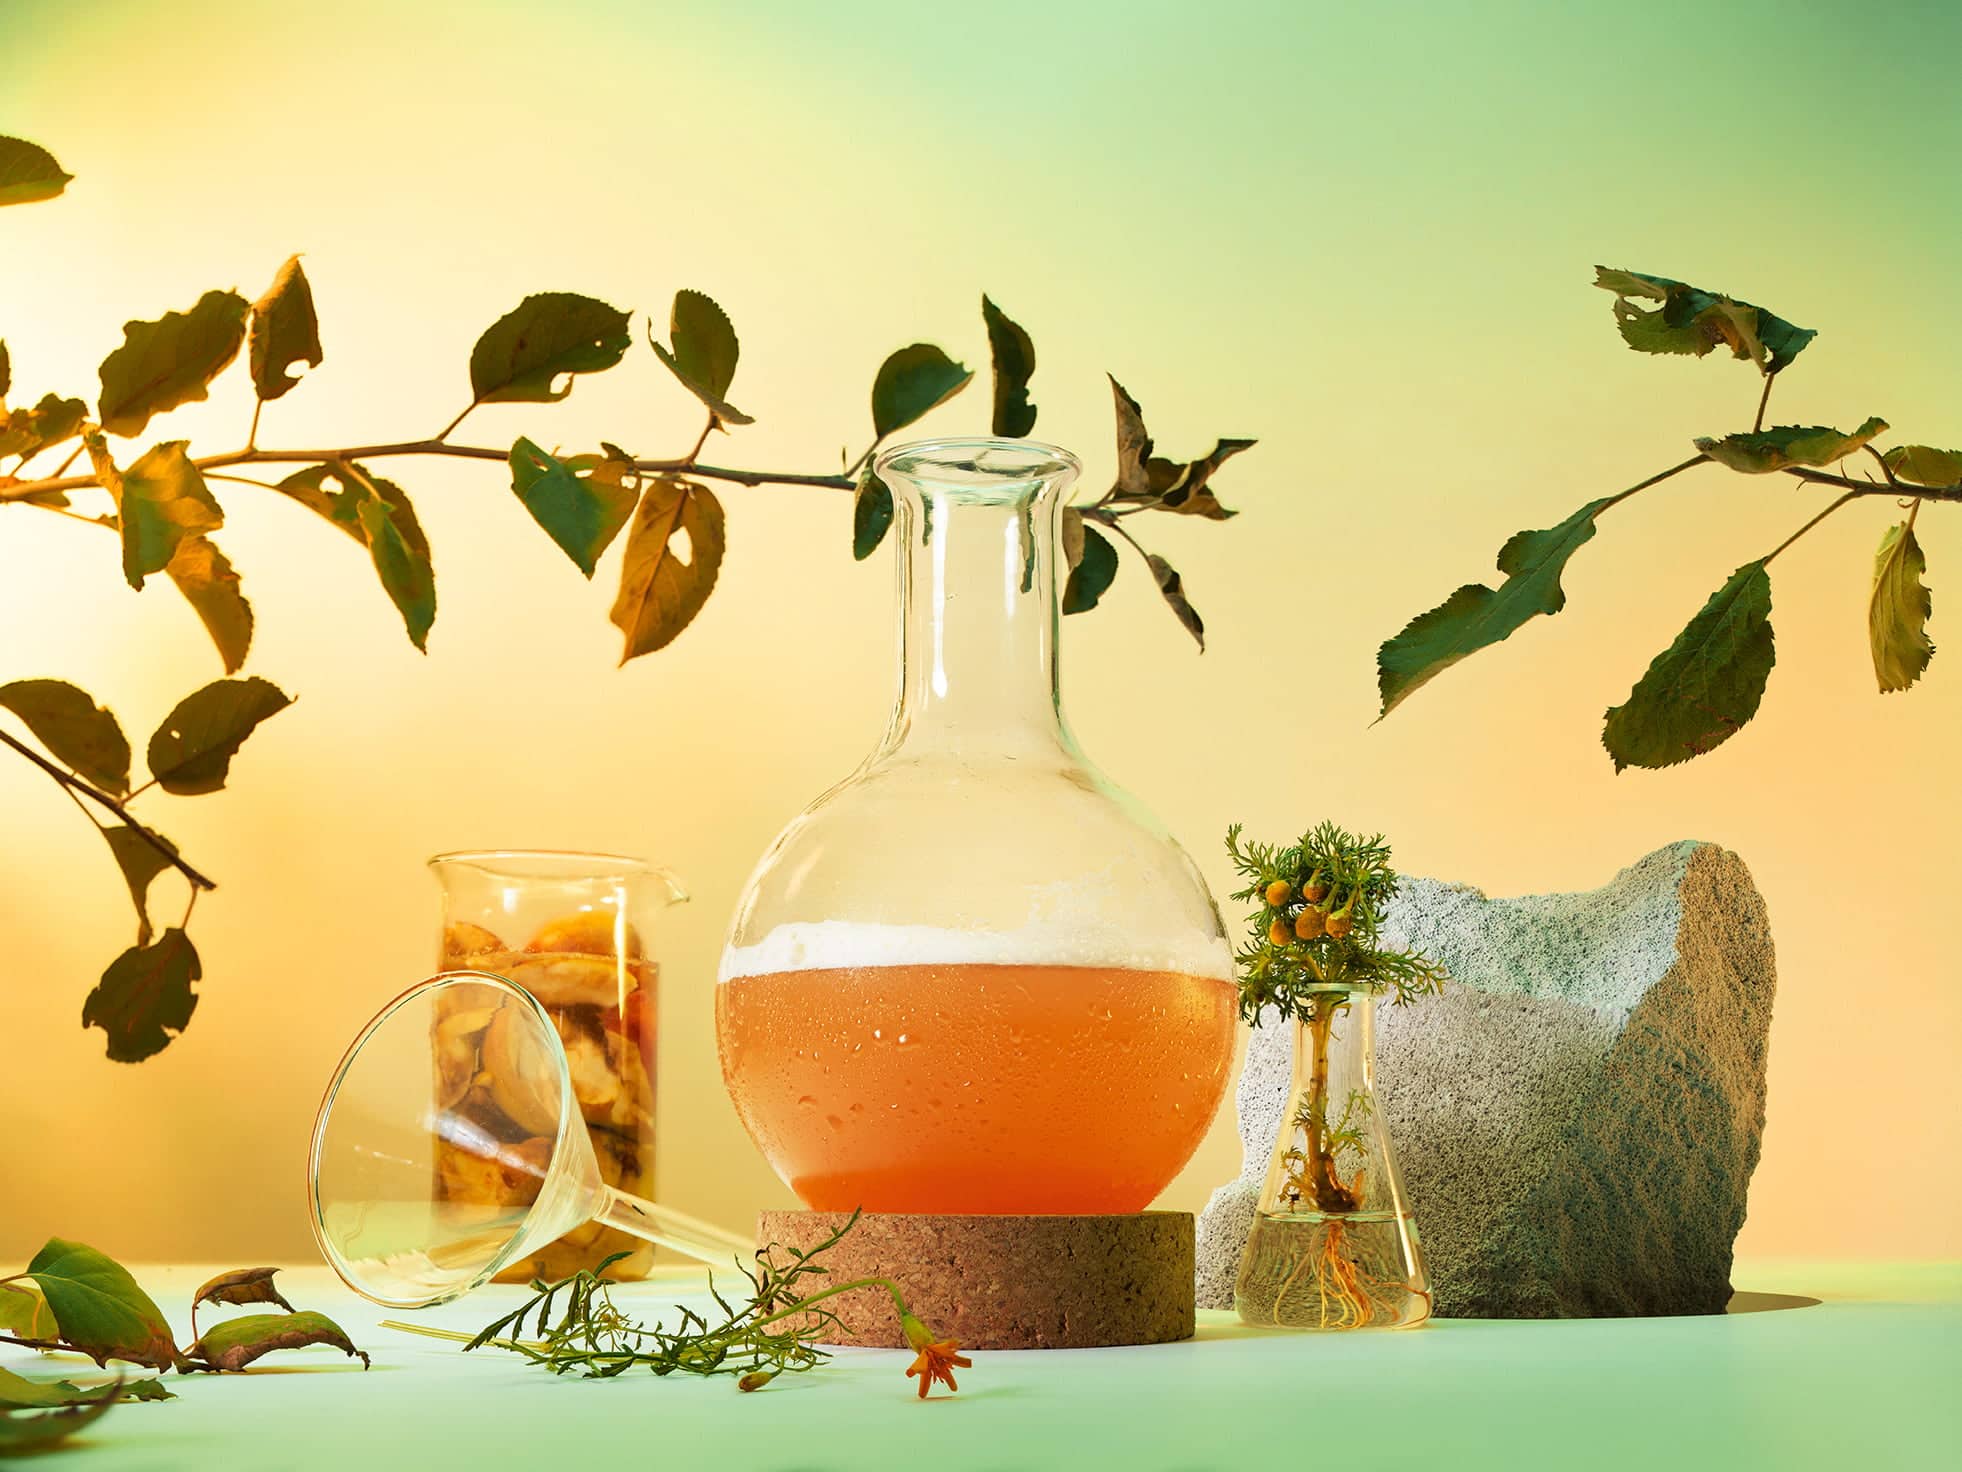 Et vakkert dekorativt bilde med et laboratie-glass fylt med oransje væske, omkranset av blader, stein og andre laboratieglass.